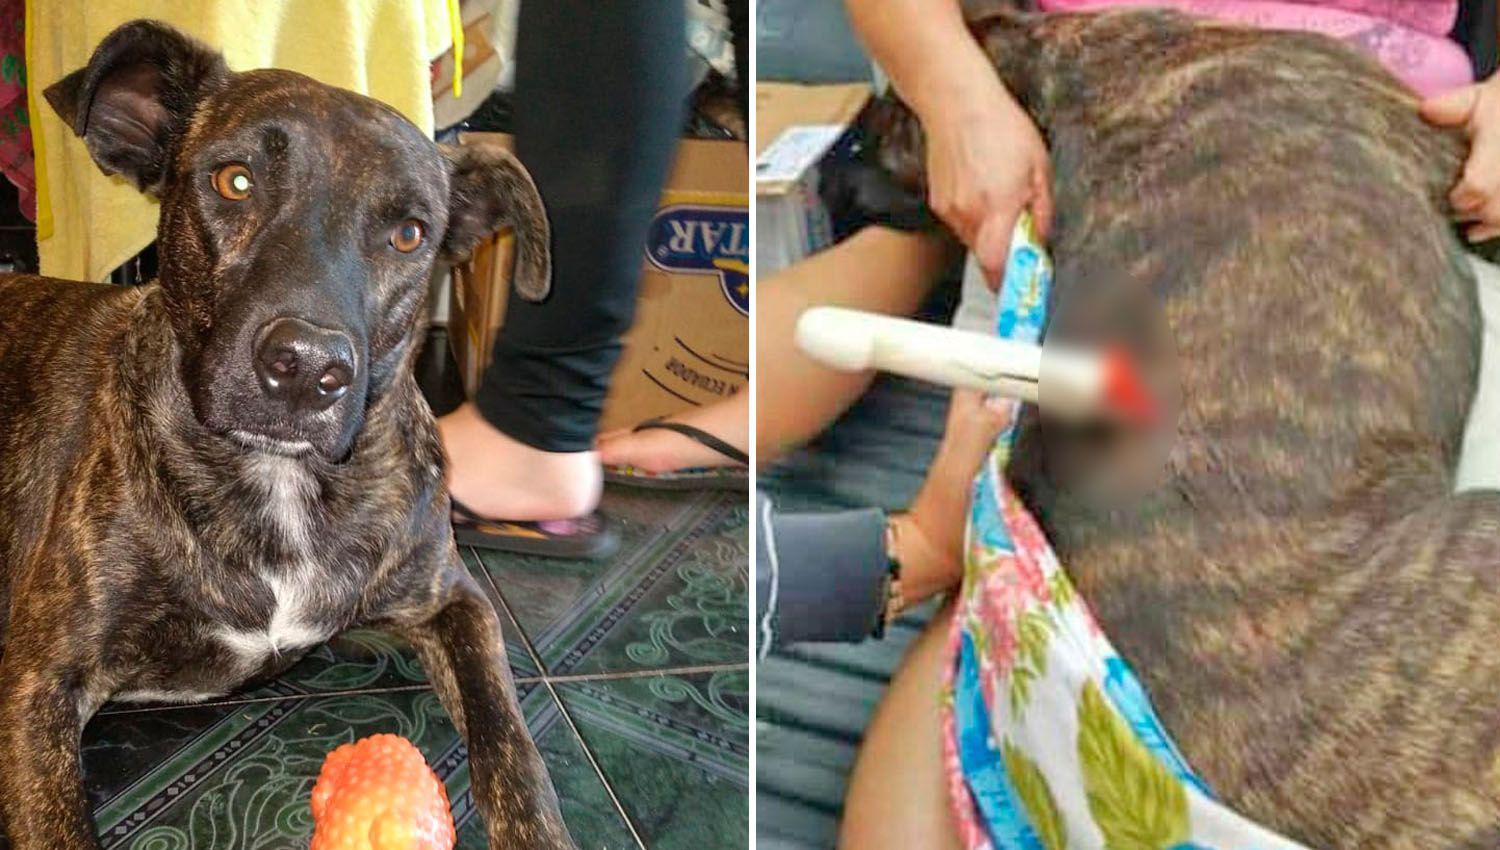 El canino fue trasladado a una veterinaria donde recibió asistencia
médica por la brutal lesión que tenía